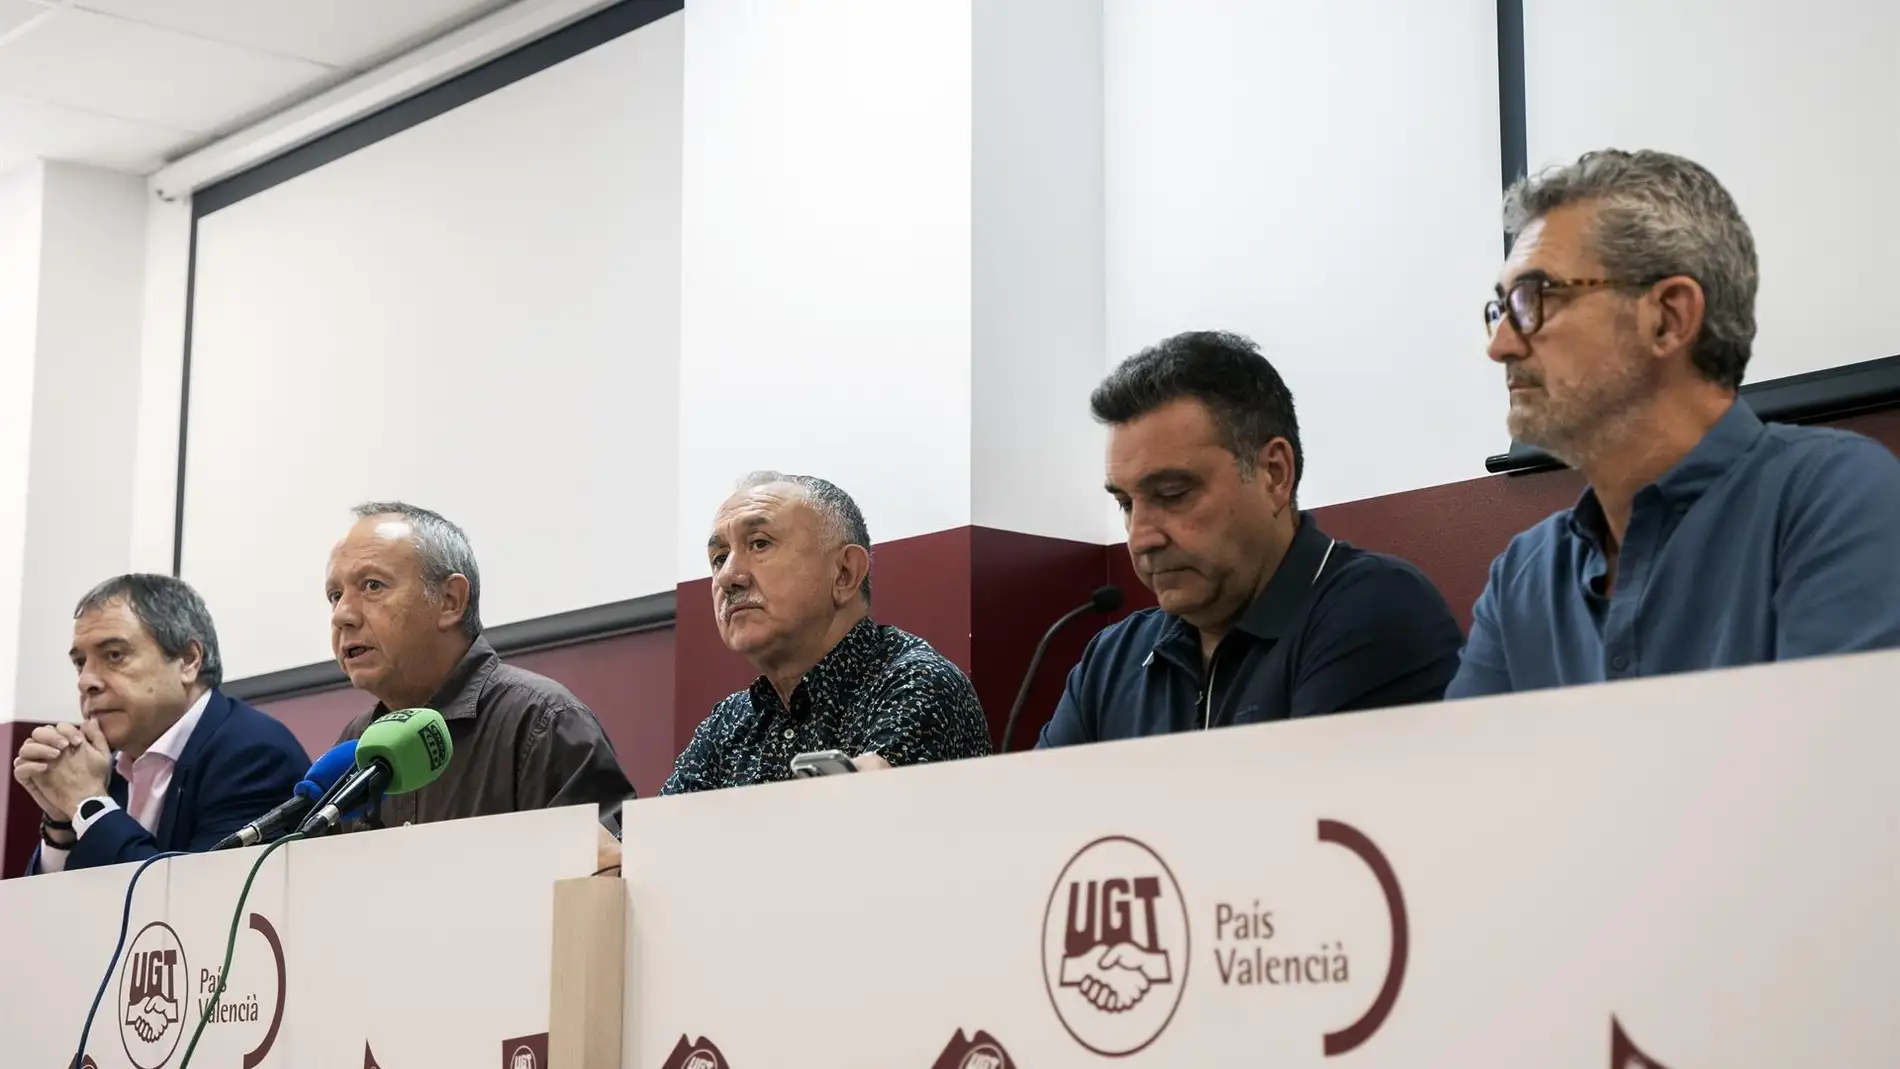 (I-D) El secretario general de UGT FICA, Mariano Hoya; el secretario general de UGT-PV, Ismael Sáez; el secretario general de UGT, Pepe Álvarez; el secretario general de UGT-Catalunya, Matias Carnero; y el de UGT FICA PV, Daniel Argente - 